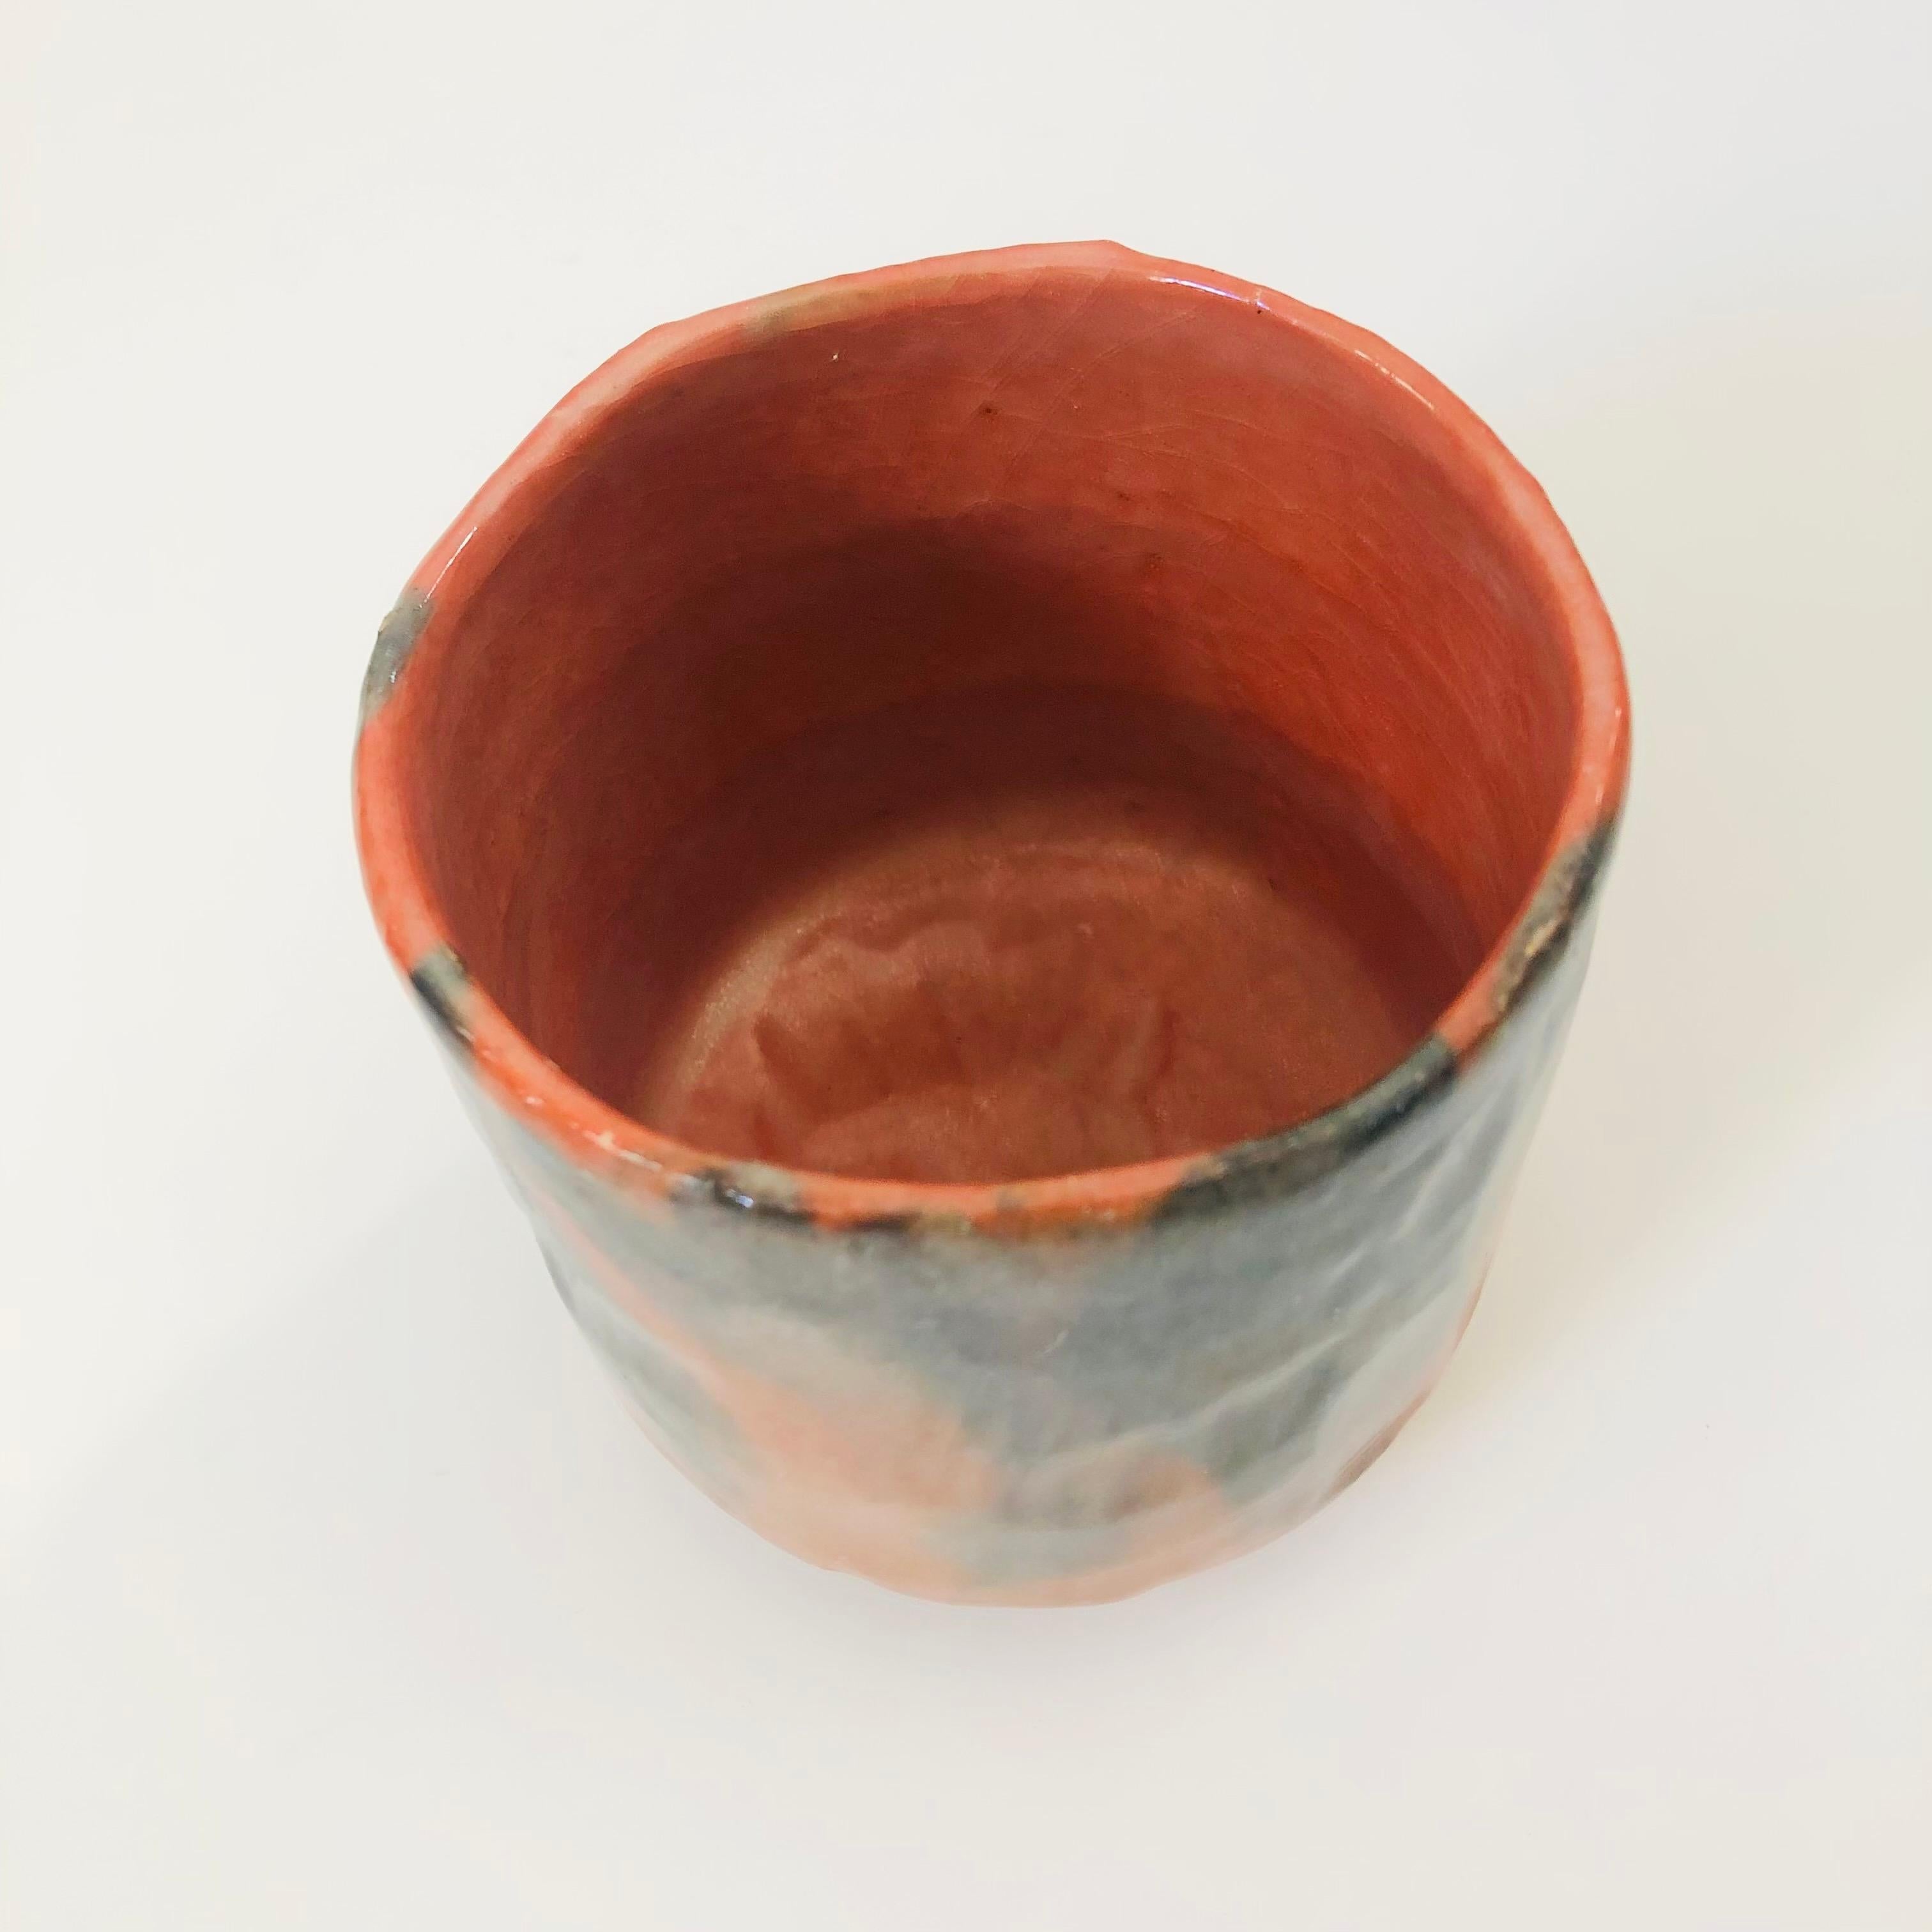 Vase ou bol vintage en poterie japonaise raku rouge. Magnifique variation de l'émail cuit au bois qui va de la terre cuite naturelle au noir. Jolie forme organique. Parfait pour une utilisation en tant que bol ou jardinière. Estampillé sur la base